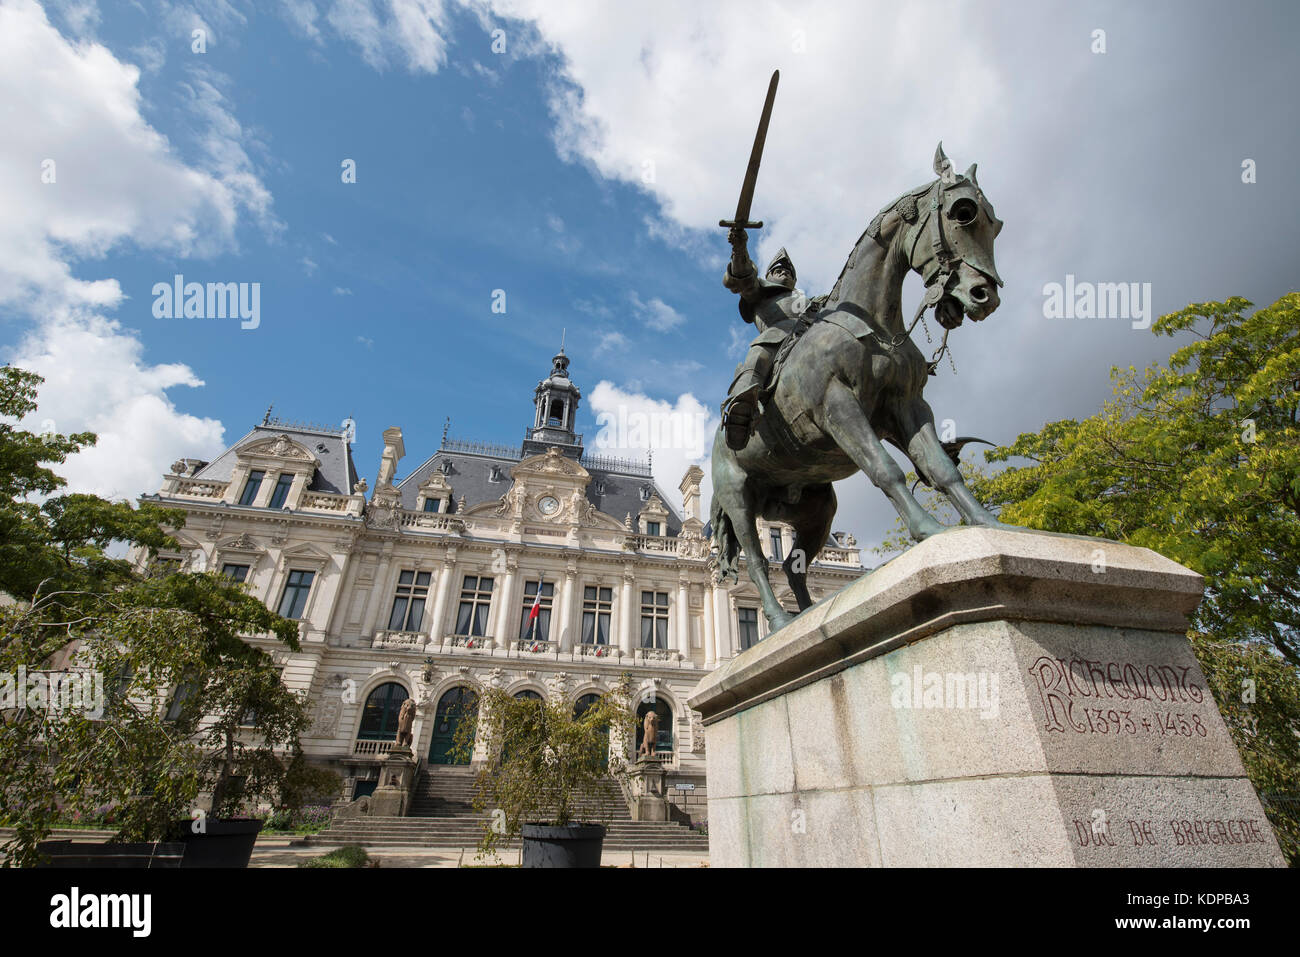 Statue of Duc de Bretagne Arthur de Richemont outside Hotel de Ville City Hall Vannes, Brittany, France. Stock Photo